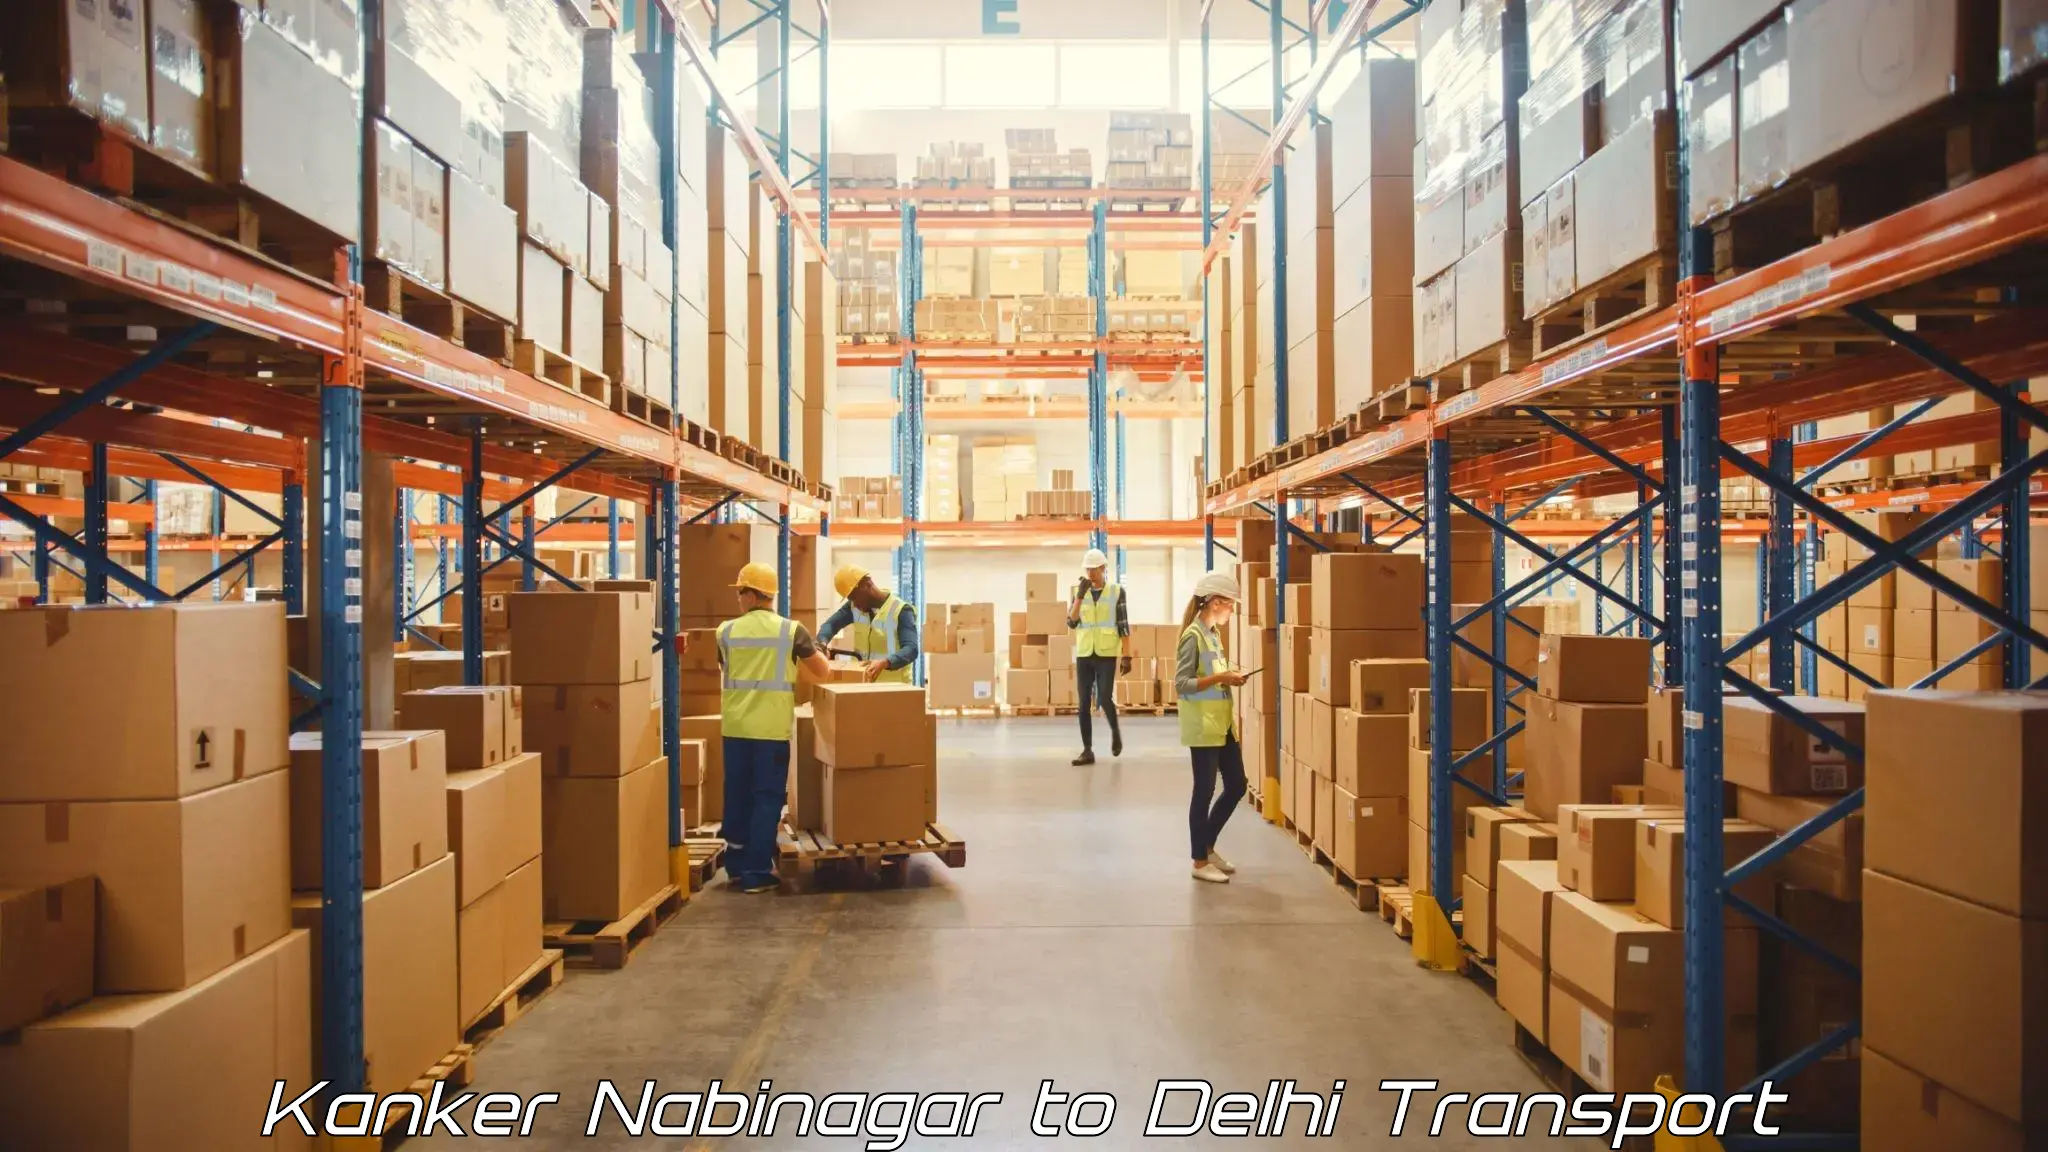 Express transport services Kanker Nabinagar to Delhi Technological University DTU